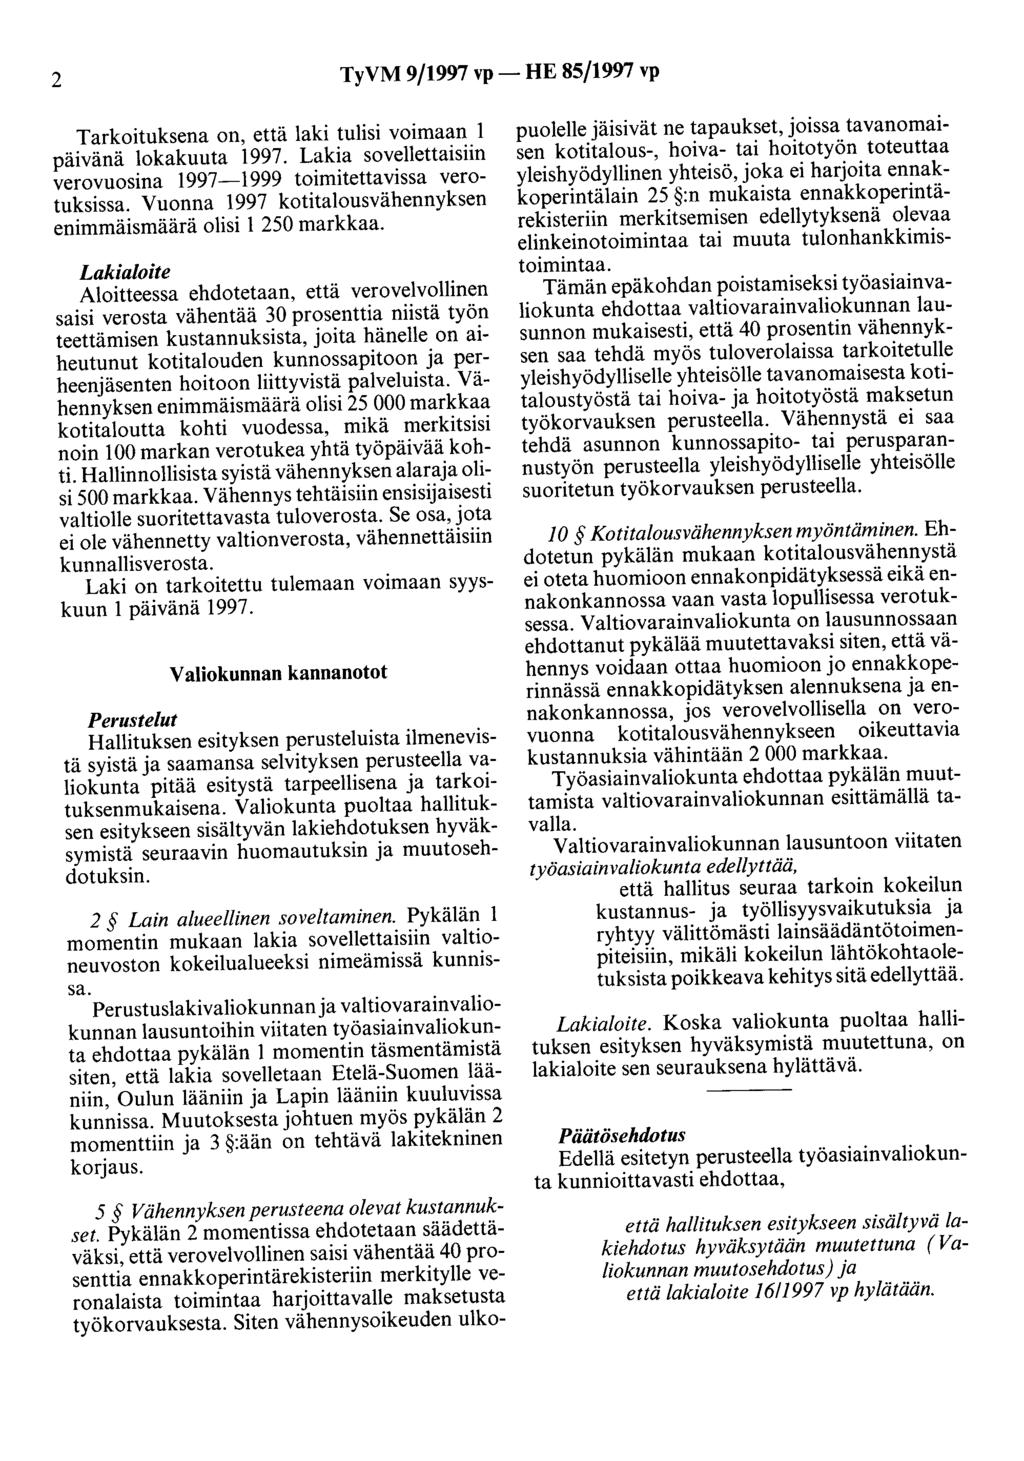 2 TyVM 9/1997 vp- HE 85/1997 vp Tarkoituksena on, että laki tulisi voimaan 1 päivänä lokakuuta 1997. Lakia sovellettaisiin verovuosina 1997-1999 toimitetta vissa verotuksissa.